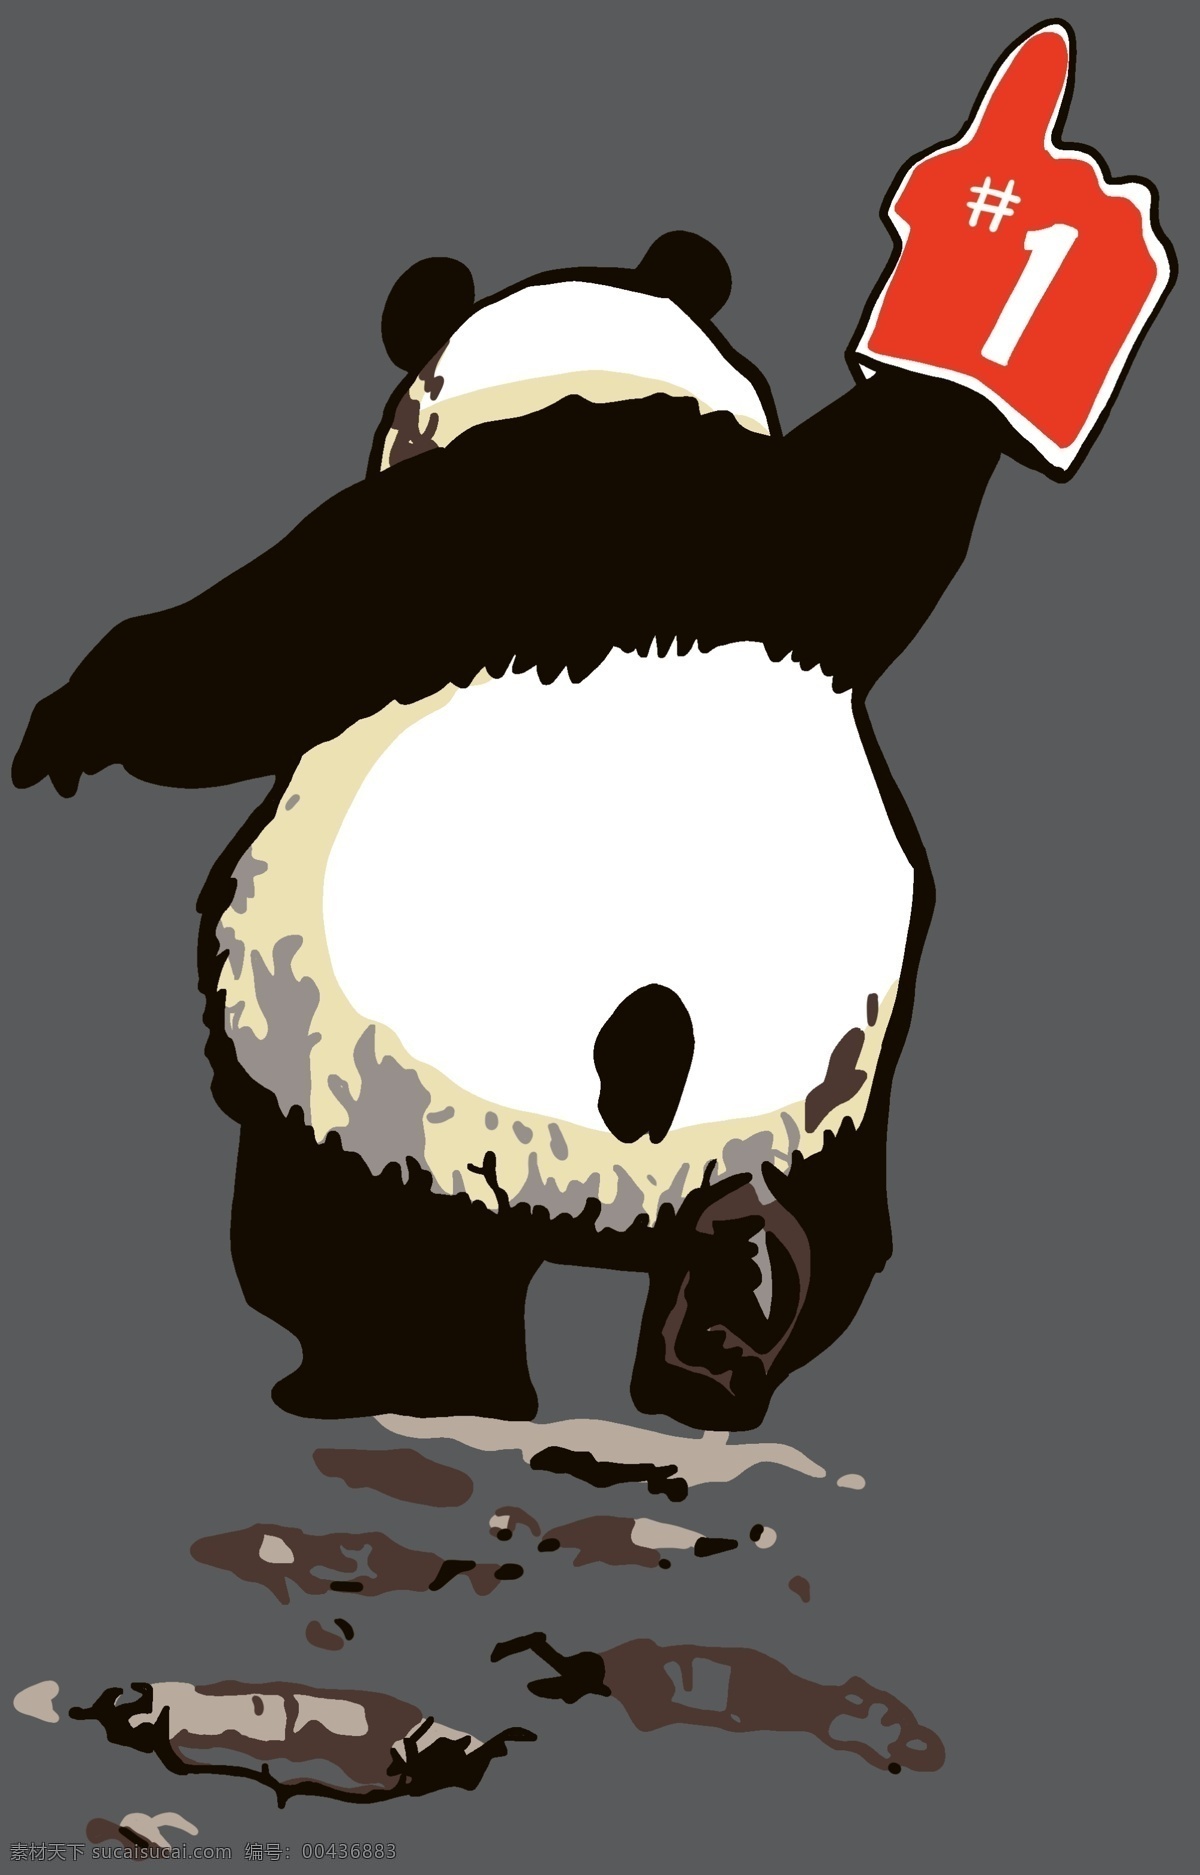 熊猫 t恤 裁片图片 1手指 背影 裁片 胶图 卡通 数码 服装设计